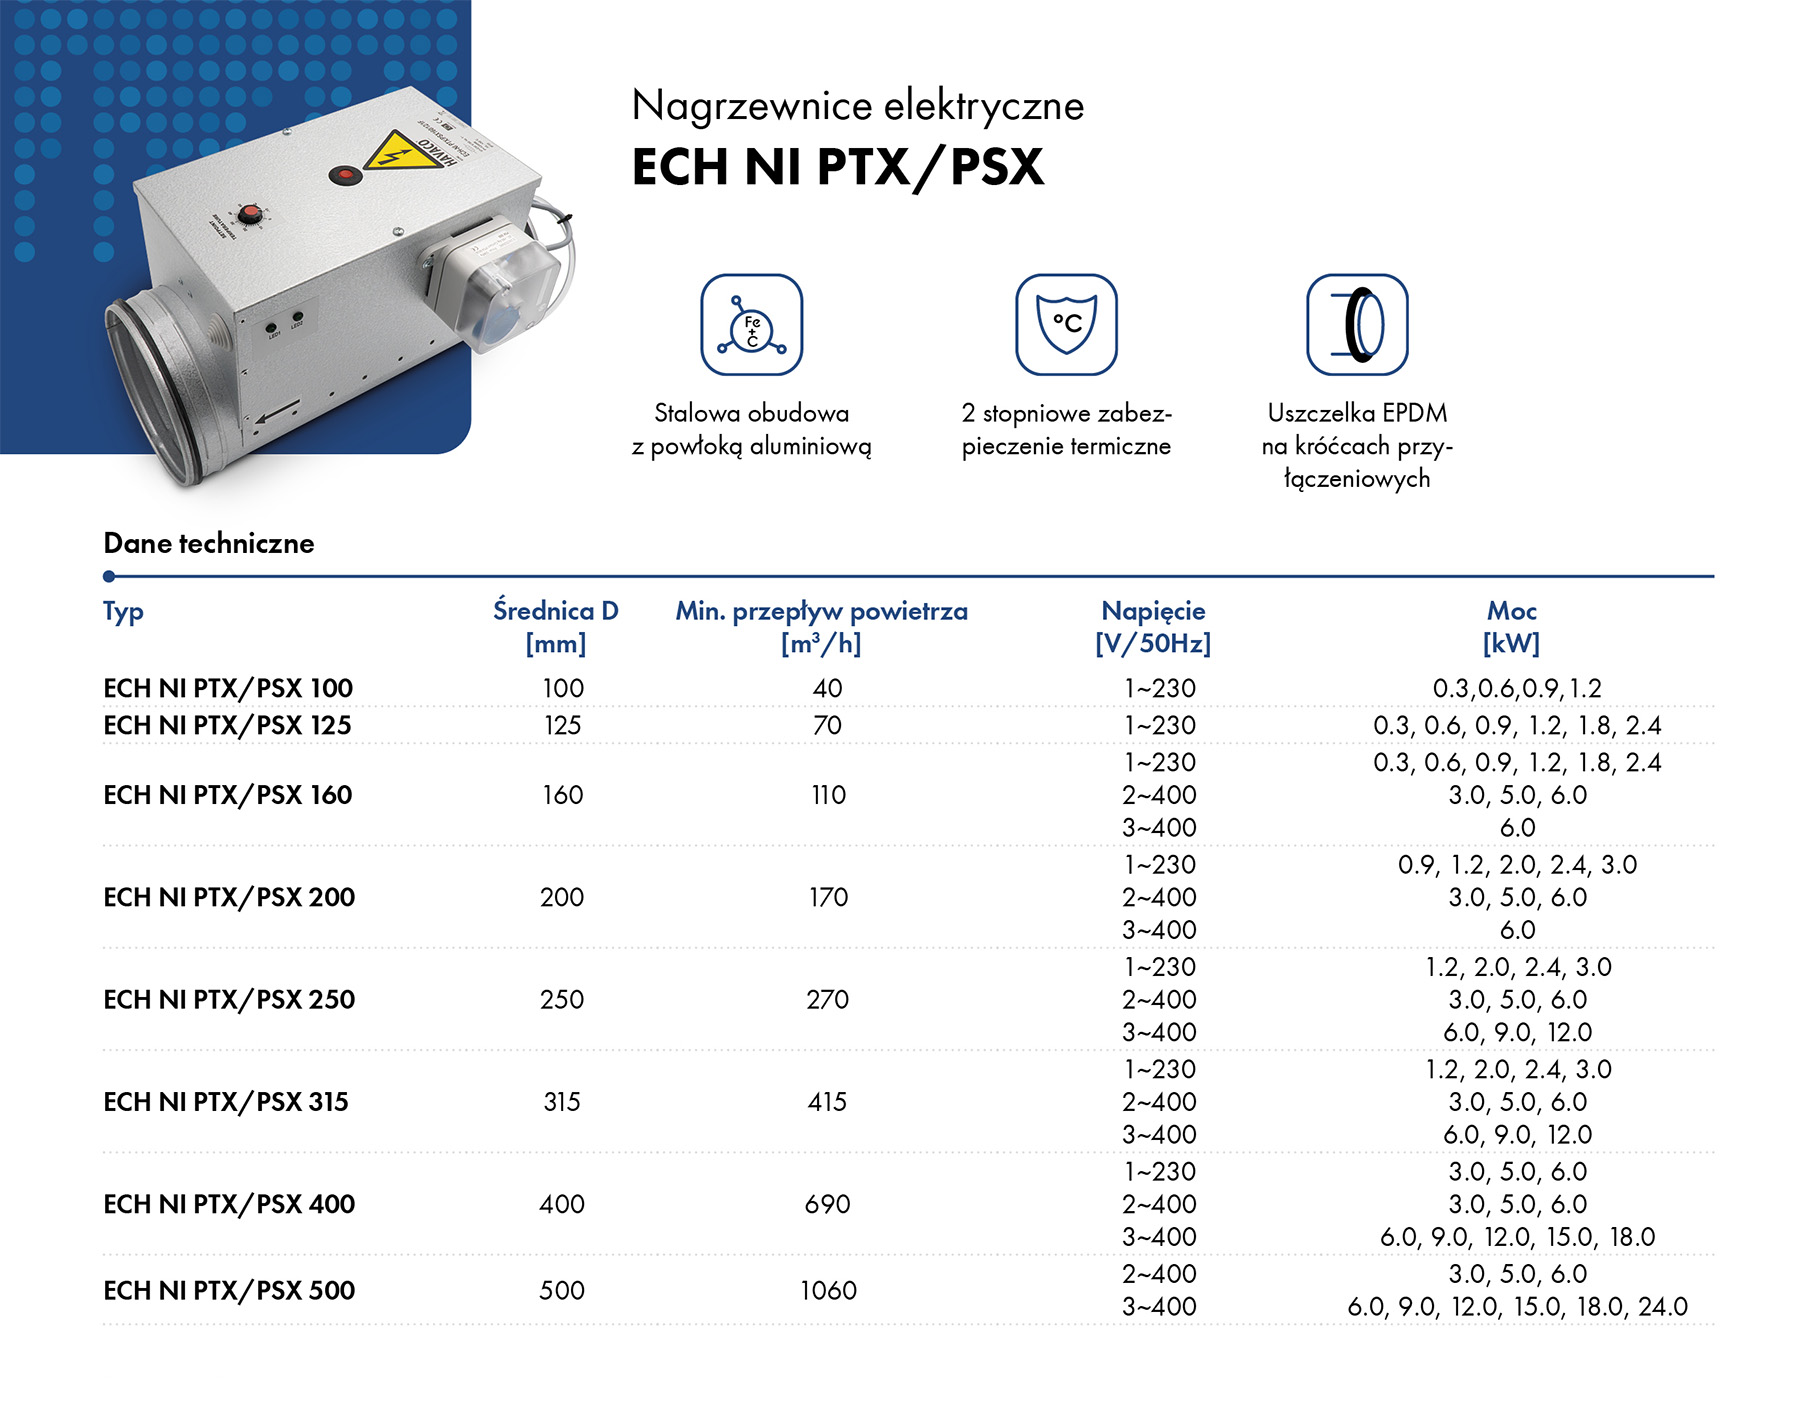 Elektryczne nagrzewnice kanałowe ECH-NI PTX/PSX HAVACO